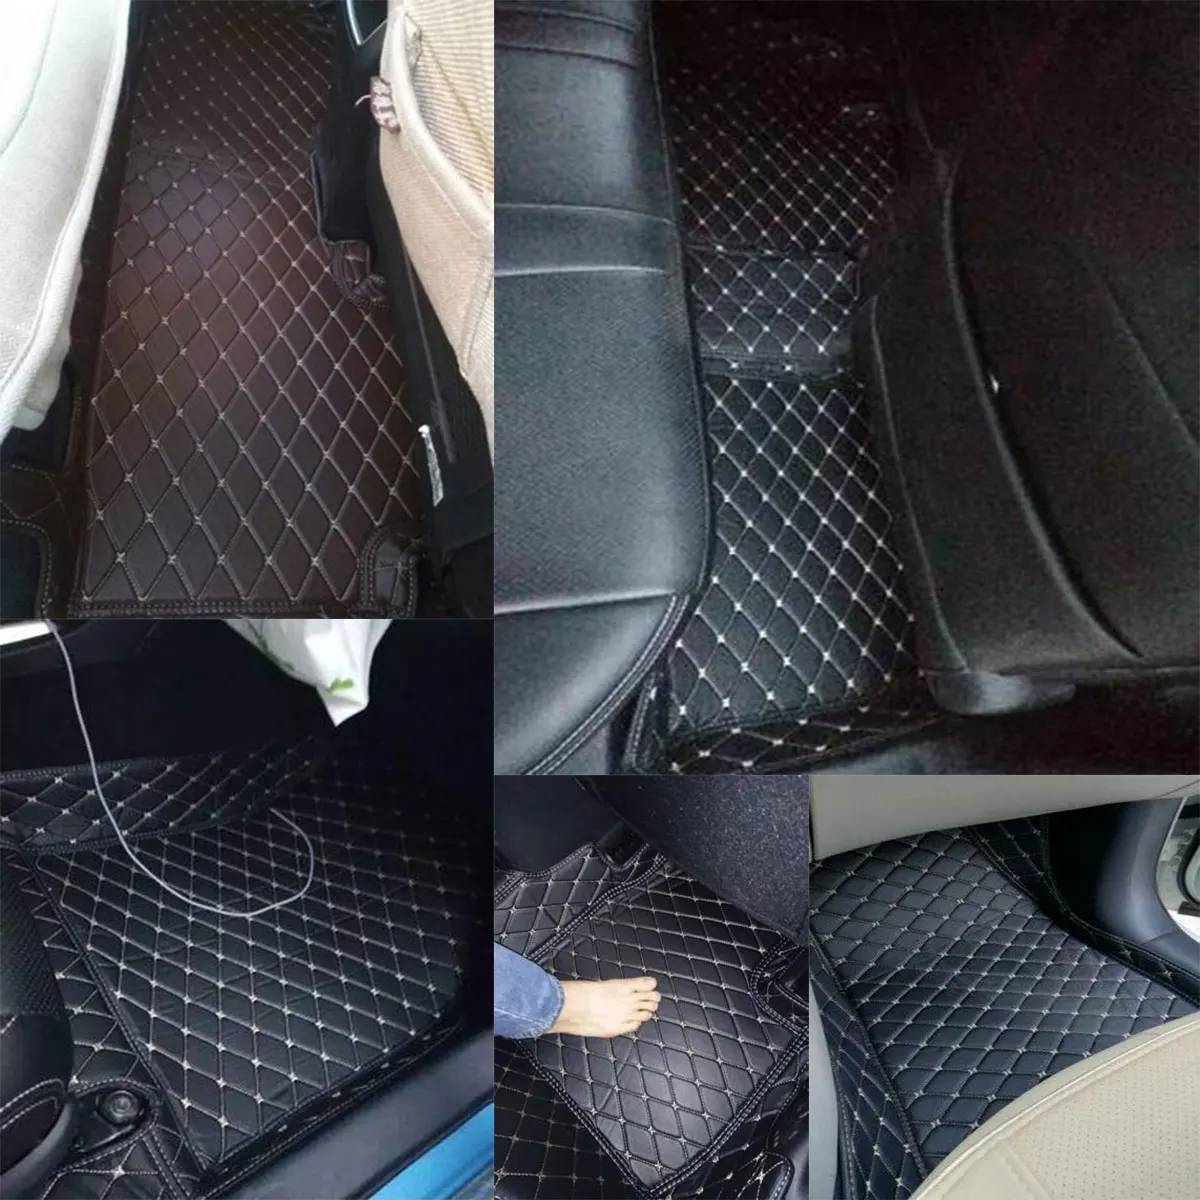 Автомобильные коврики для BMW 3 серии F30 2012- 5 сидений LHD коврики для автомобиля Стайлинг салона авто коврики водонепроницаемые аксессуары